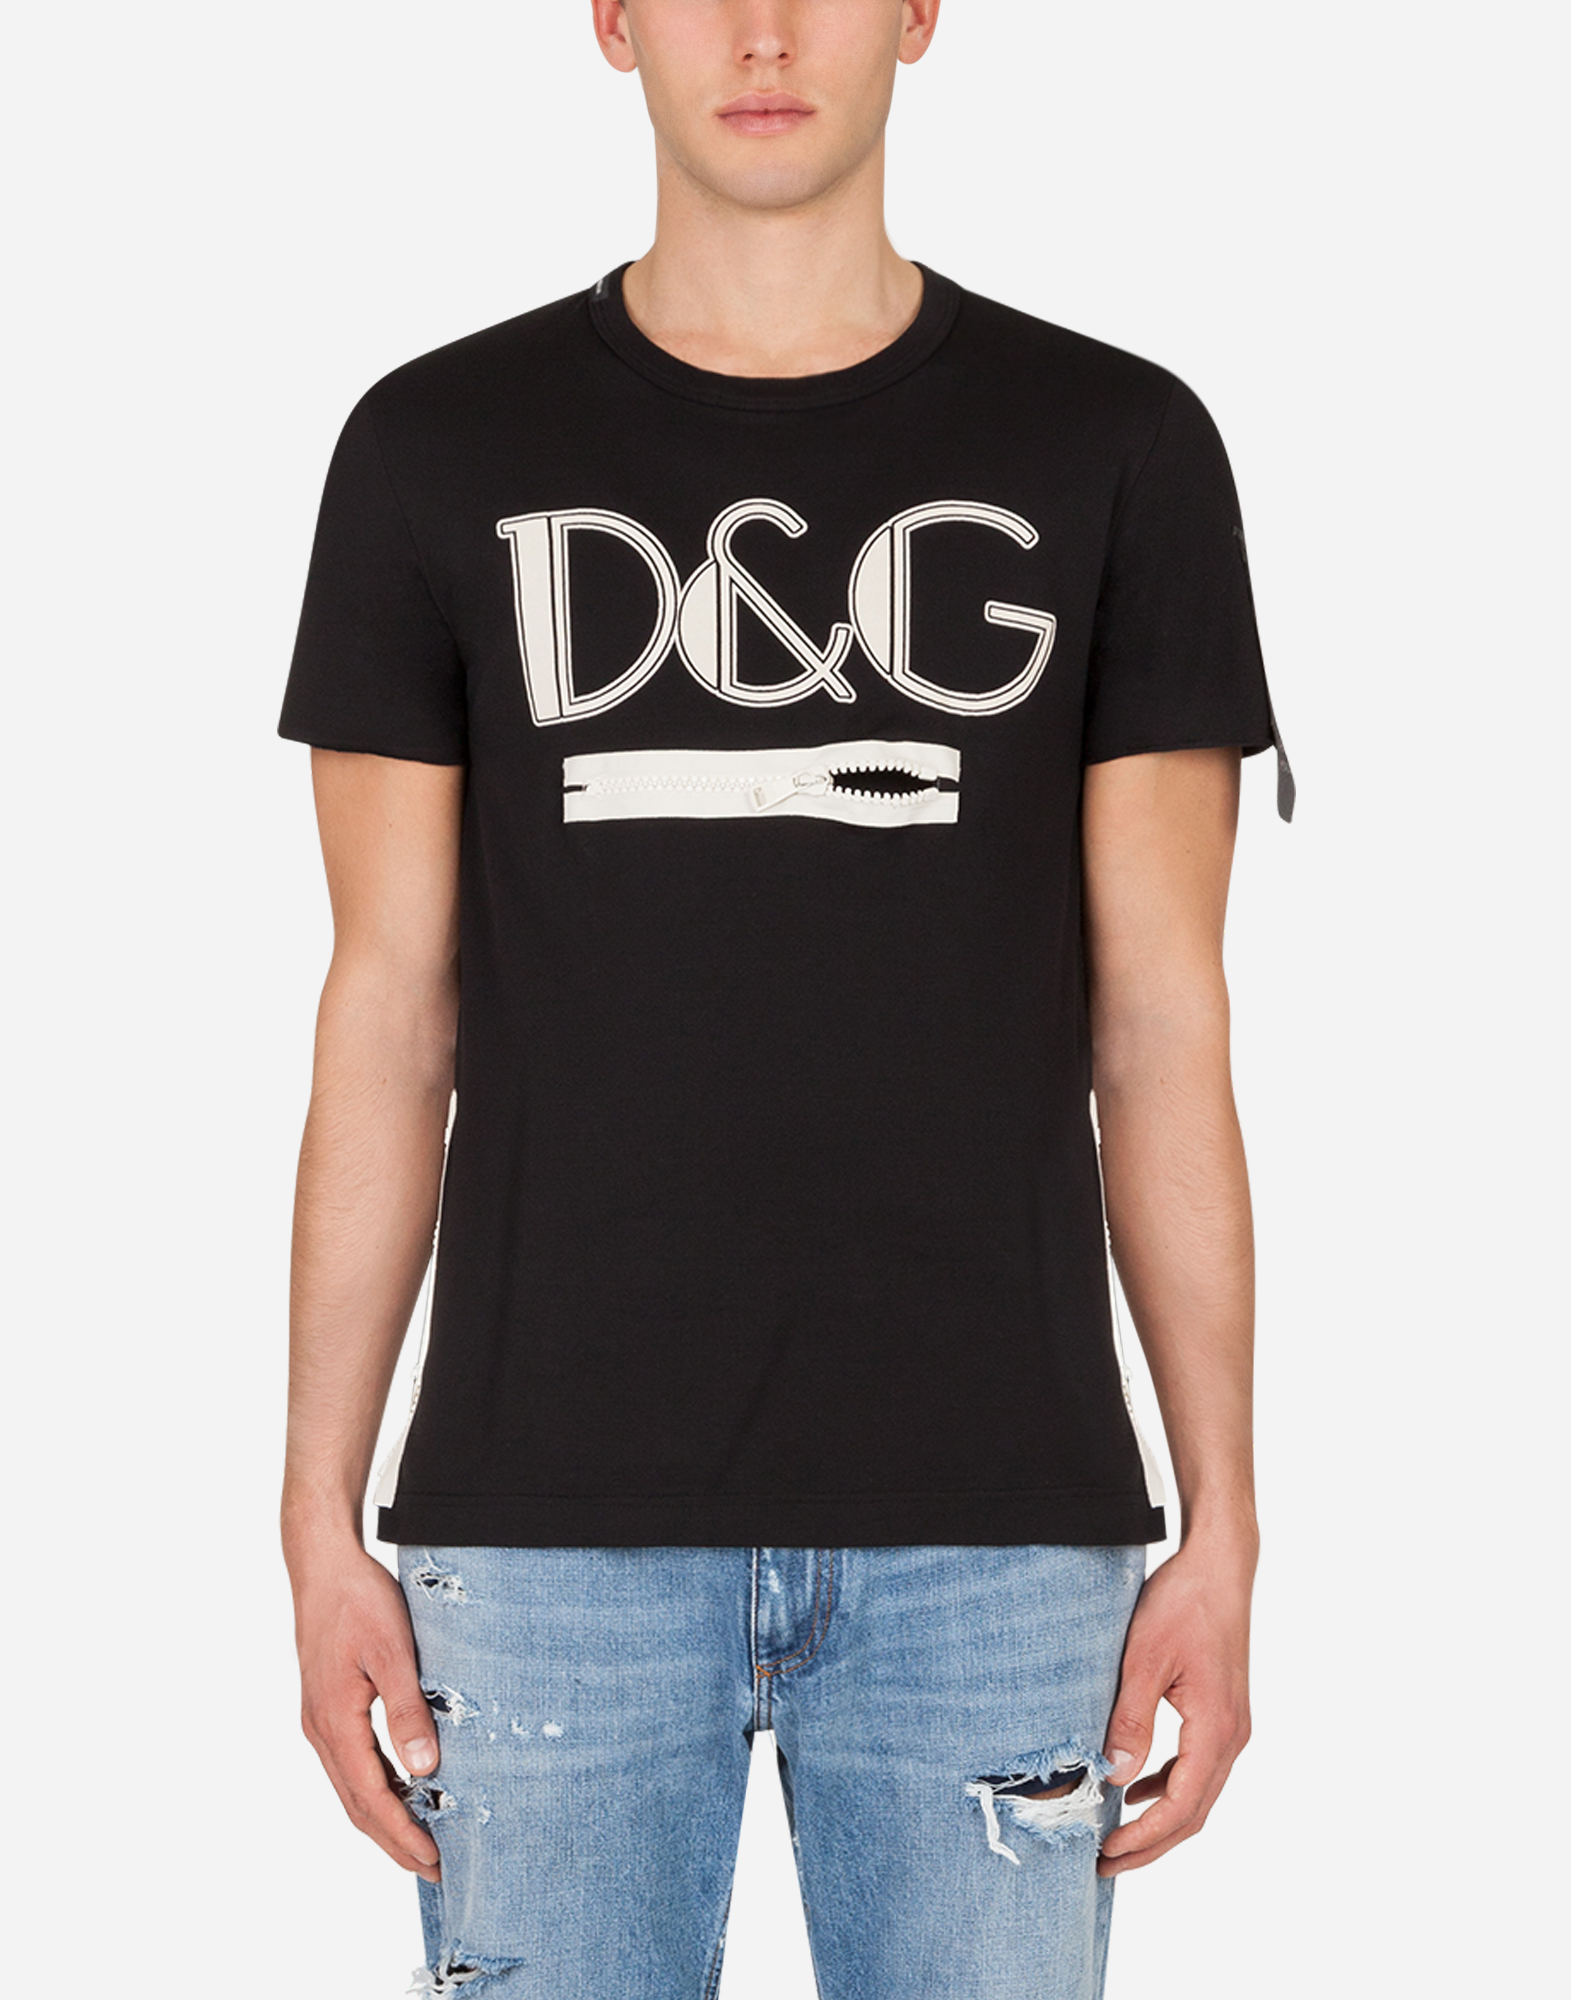 d&g shirt